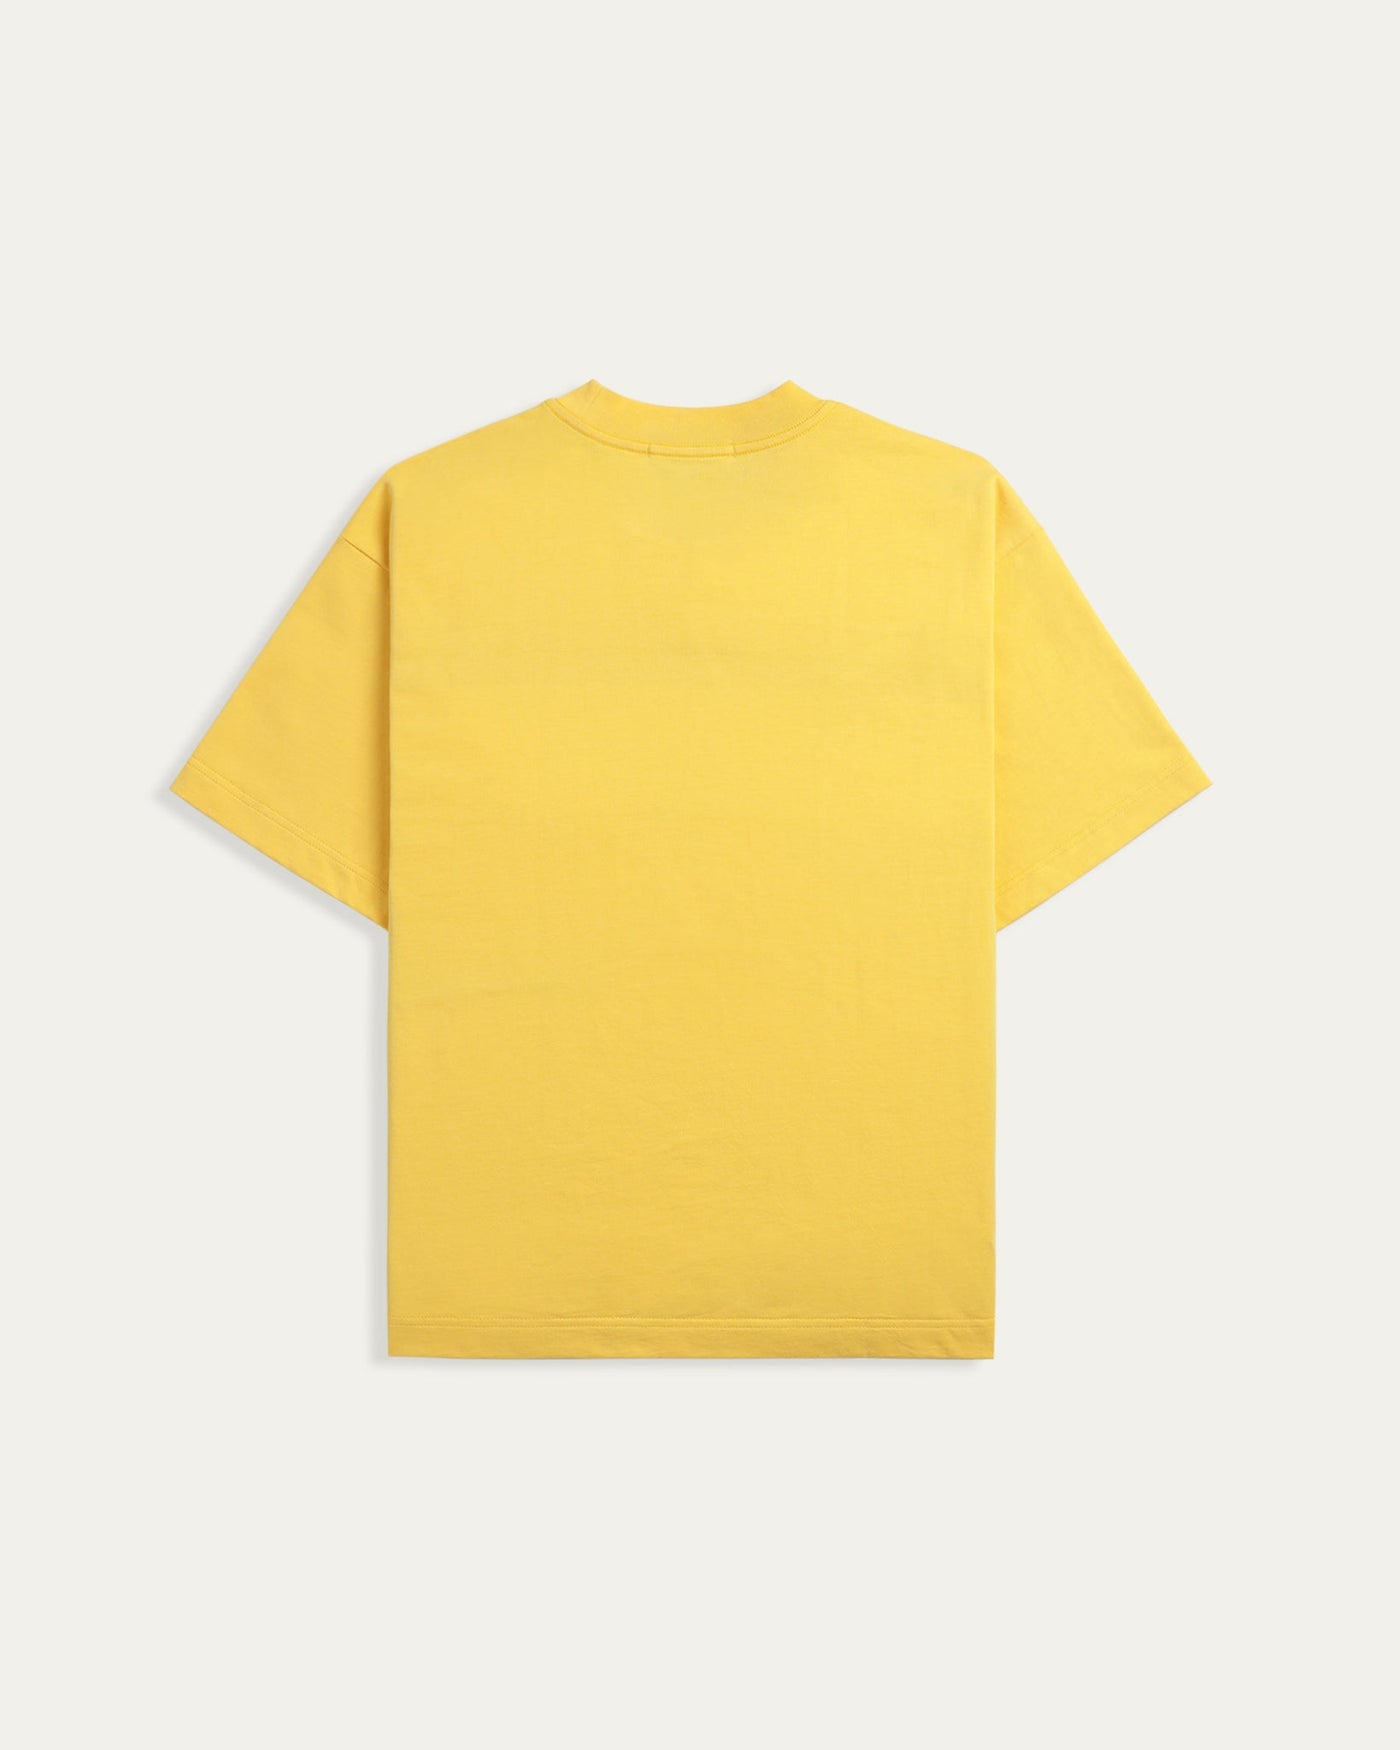 My Heaven Patches Boxy T-shirt - Yellow - TOBI